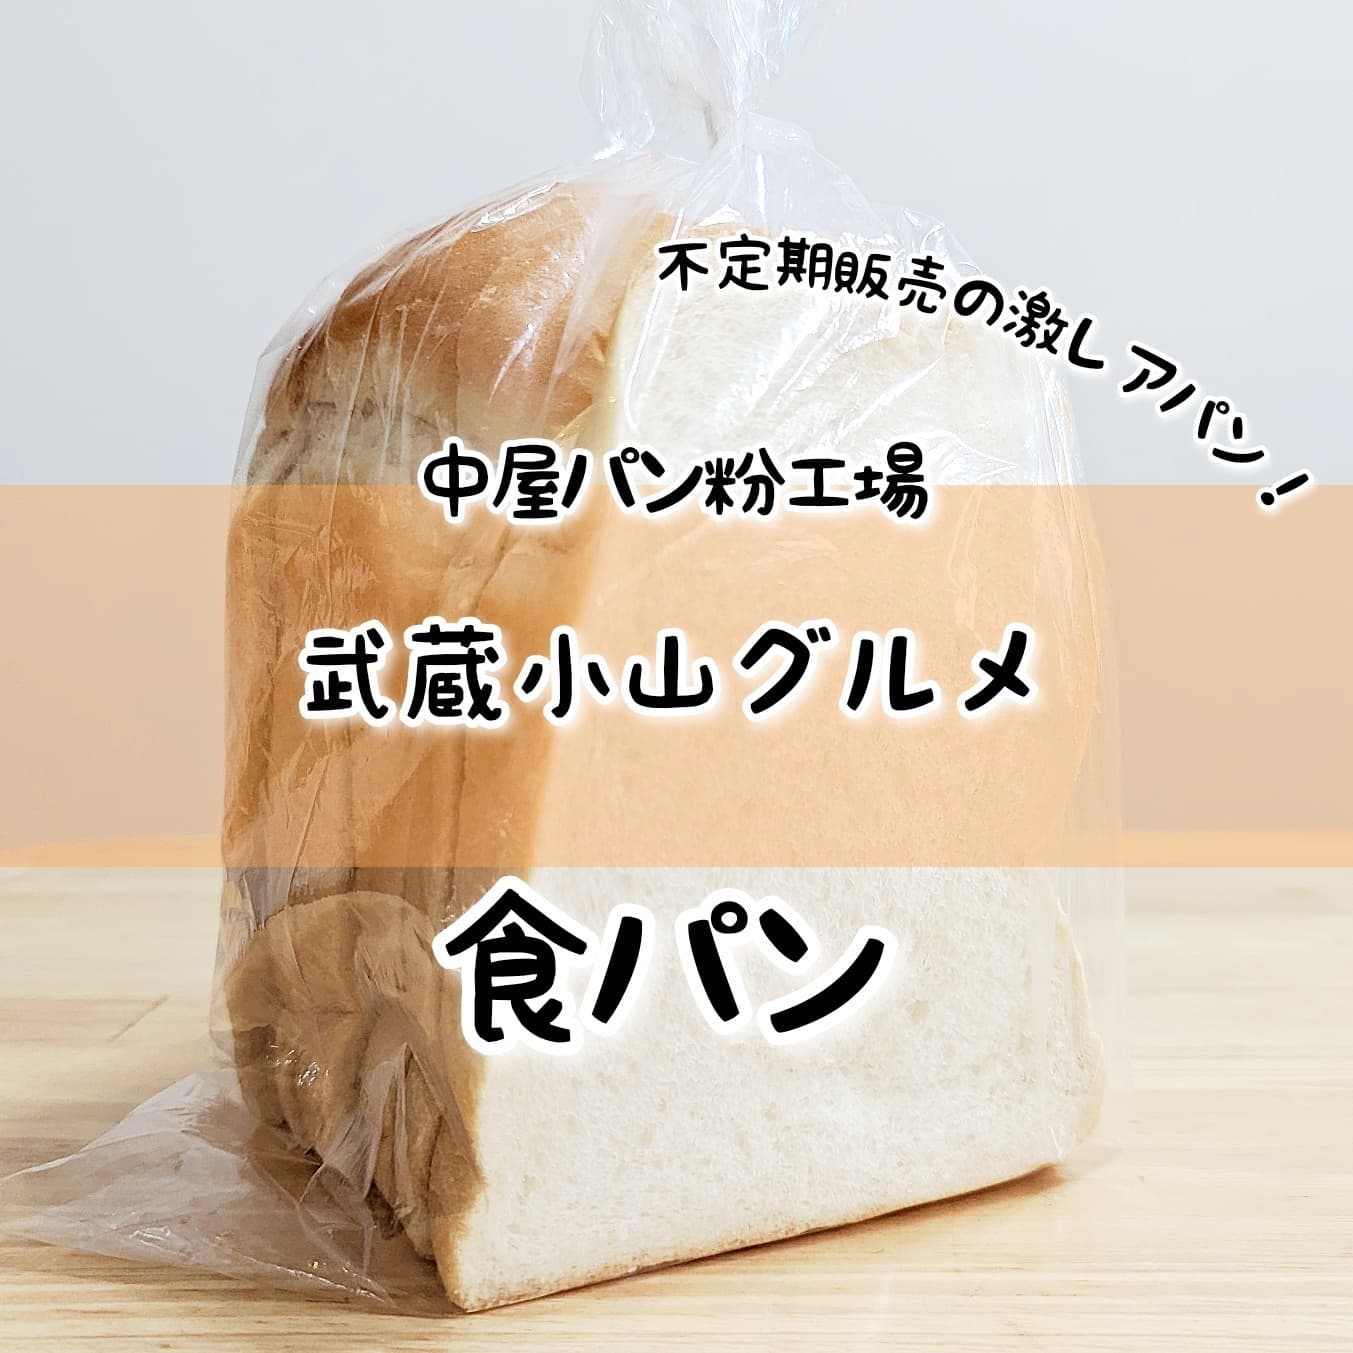 #武蔵小山グルメ情報 #中屋パン粉工場 #食パン 不定期で販売してるパン粉工場の激レアな食パン！超サックサクなトーストが食べたいならこのパン粉工場の食パンしかないね。おもいで度－－☆－－ #侍猫度マイルド系－☆－－－スパイシー系あっさり系－☆－－－コッテリ系シンプル系－☆－－－ゴロゴロ系オールド系－－☆－－ニュー系明けましておめでとうございます。今年も武蔵小山のグルメを探していきたい所存でございます。今後ともよろしくお願いいたします。しっとり柔らか食感の食パン！焼いて食べるとすんごいカリカリ食感！カリッとサクッと噛み切れてとっても軽い味なのでパン粉を感じる仕上がりでこれはこれで美味しい。流行りのモッチリ食感に飽きた時に良いね！このお店は、週1回位のペースで店頭販売してるパン工場でございますな。よく金・土で店頭販売するそうですが、偉い人の気まぐれで決まるのから次回は不明。パン工場のできたてパンを食べたい時は金・土の散歩コースを中屋前経由にするしかなさそうですな。場所は、商店街を中原街道方面に進んでマックの十字路を右に曲がって26号線を越えて八幡神社の手前くらいでございます。 もっと武蔵小山のお店を探す時はメインサイトが見やすいですぞ！プロフィール画面に記載のURLからGO！→@musashikoyama.news ※本店だと地図が見やすくなっとります。画像やら記事もちょいとだけ違う感じになっとりますよ！【武蔵小山情報募集】おすすめのお店やらメニューがございましたら侍猫さんの食べに行くリストへ追加しますので、コメントやらメッセージやらでうまいこと教えてくださいな！…きっと行きます。 #武蔵小山 #武蔵小山情報 #武蔵小山ランチ #ランチ #グルメ #武蔵小山商店街 #武蔵小山パルム #武蔵小山商店街パルム #武蔵小山駅 #武蔵小山グルメ #武蔵小山ランチ #武蔵小山ディナー #武蔵小山食事 #武蔵小山モーニング #東京 #東京グルメ #東京 #東京グルメ  #musashikoyama #tokyofood #tokyo #パン